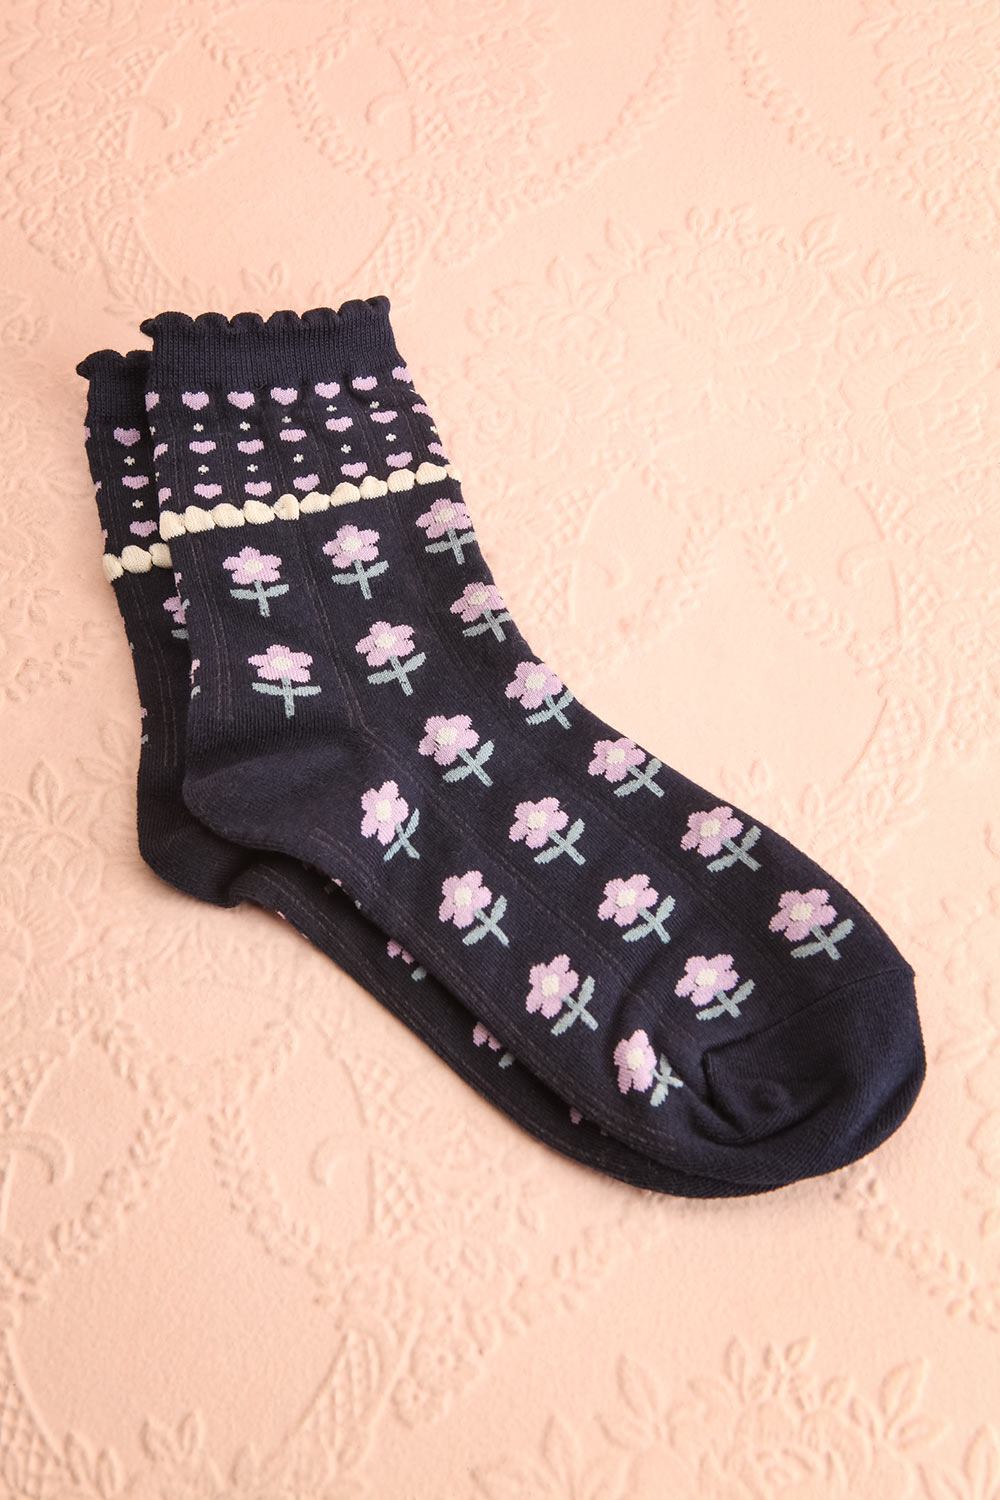 Torri Black Floral Crew Socks | Boutique 1861